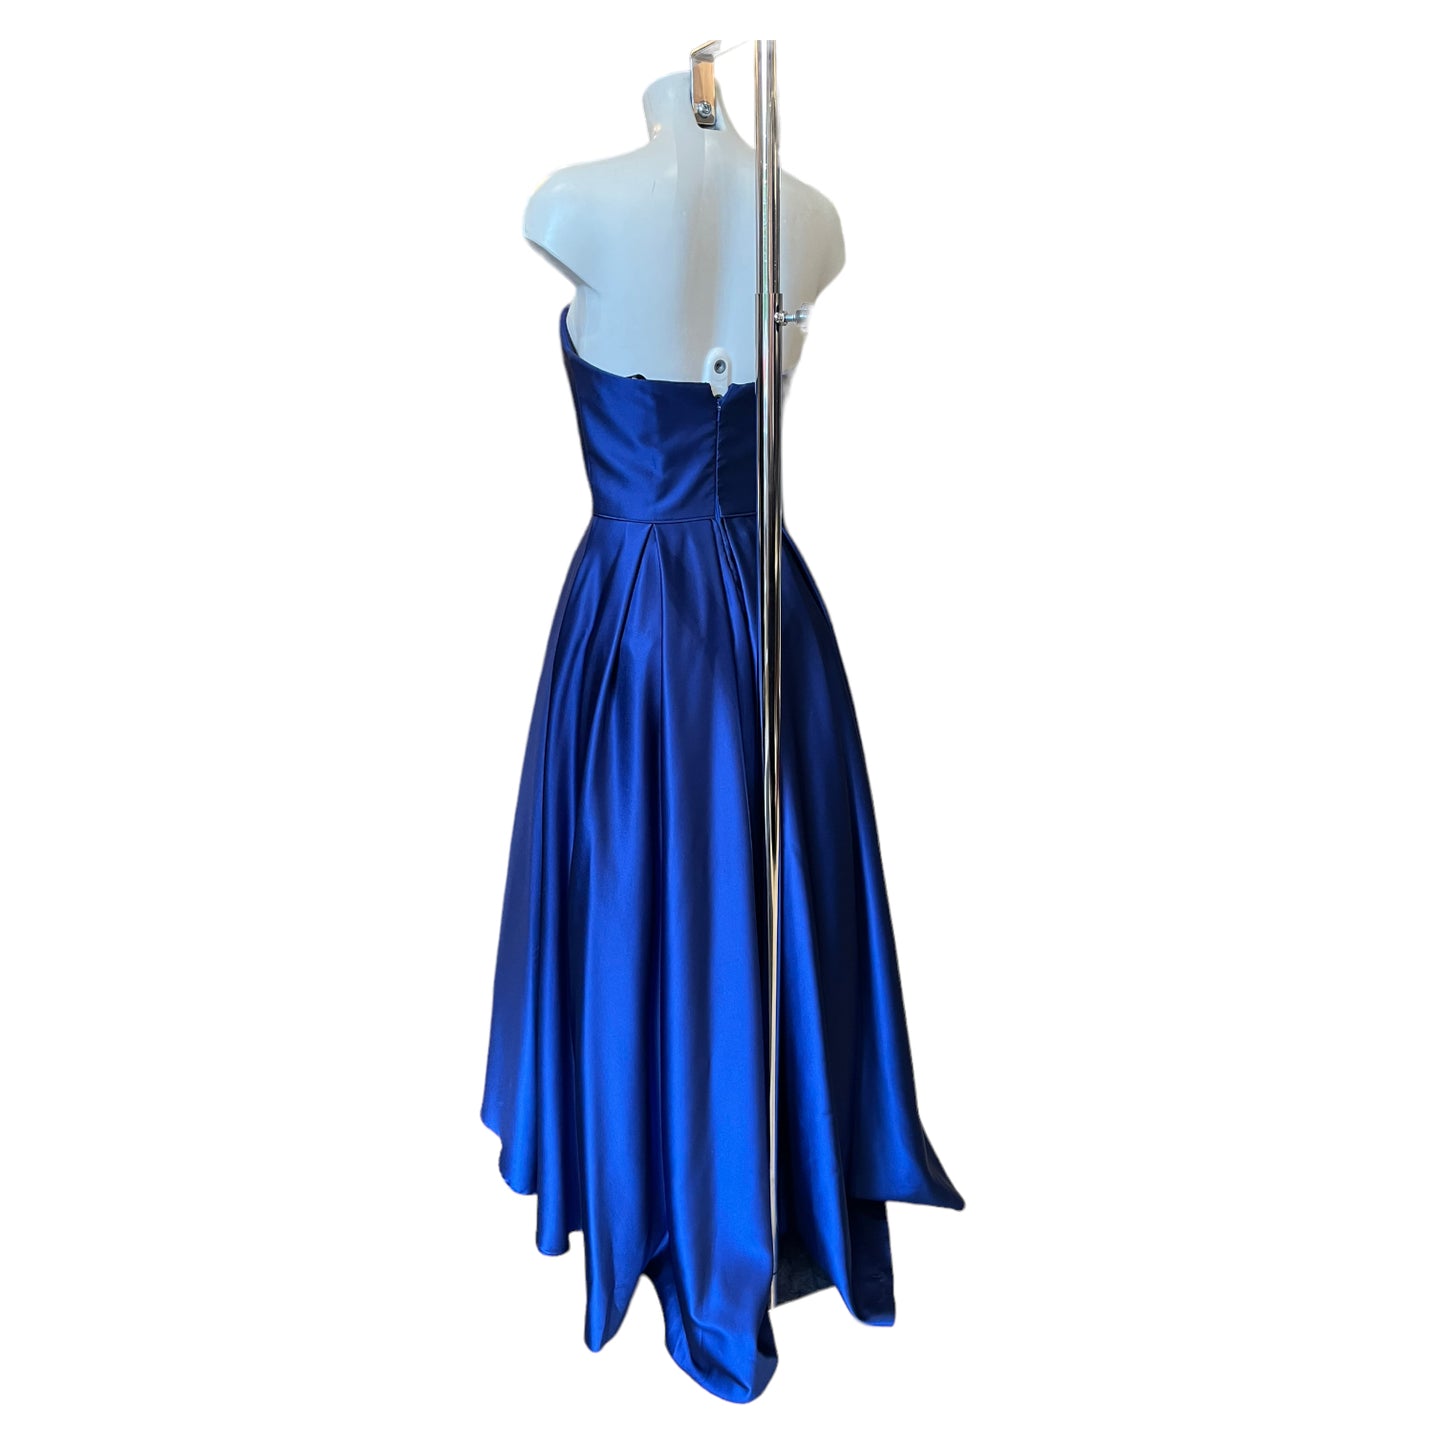 Betsy Adam Blue Formal Dress